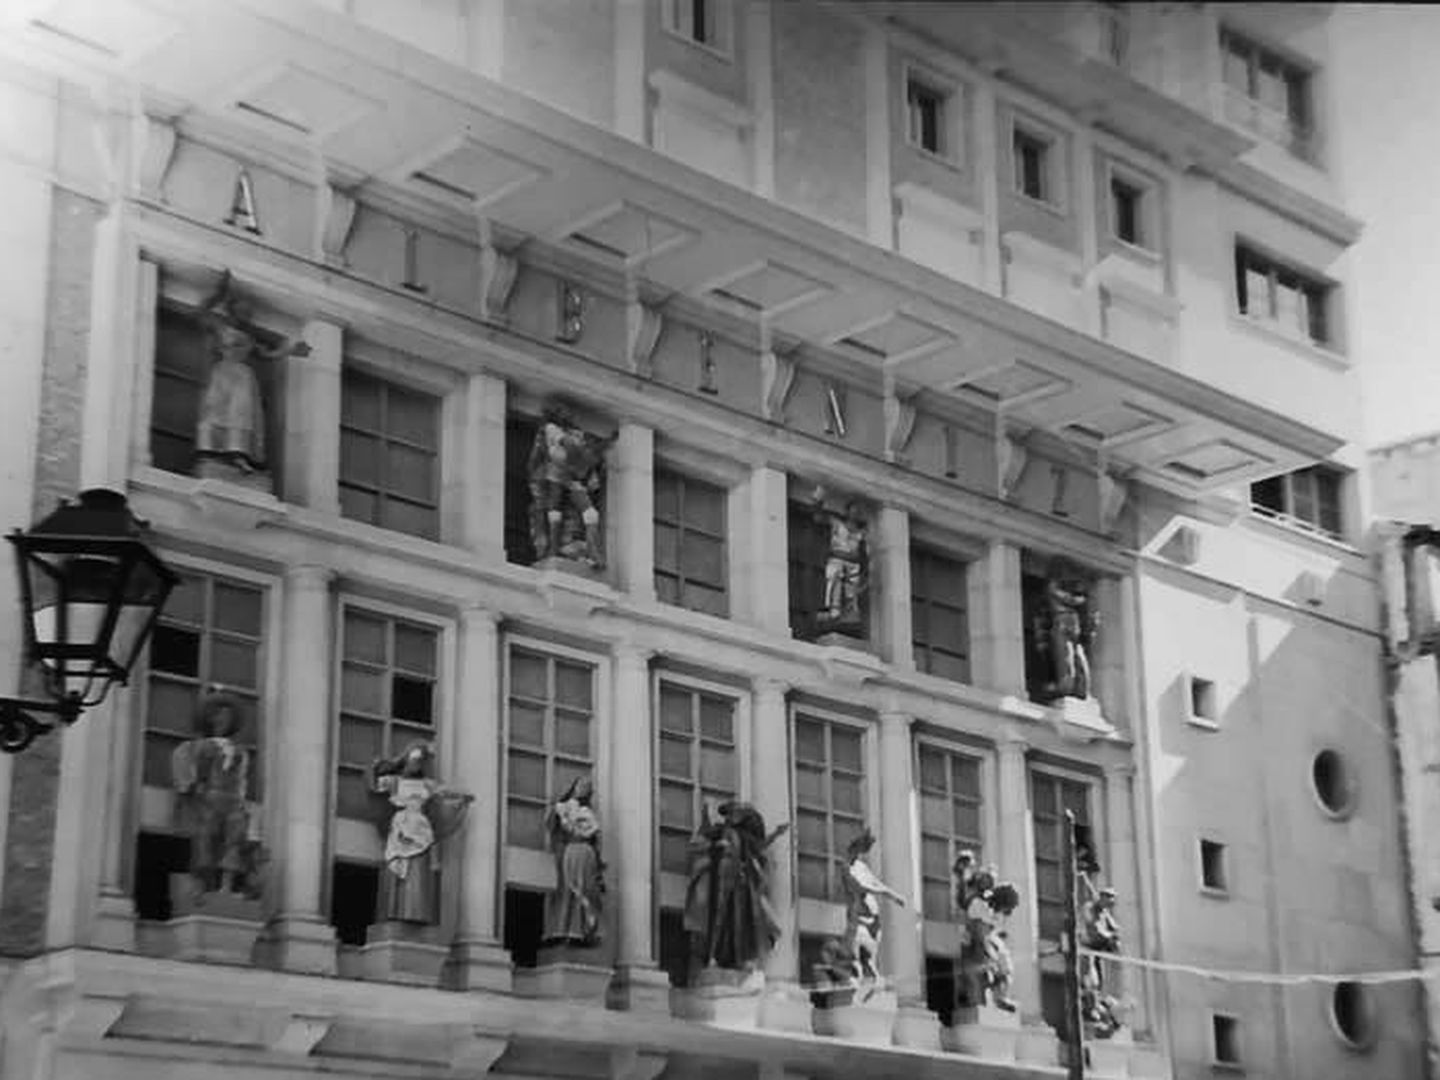  Teatro Albéniz en los años 40, con las estatuas originales. (Historias Matritenses)